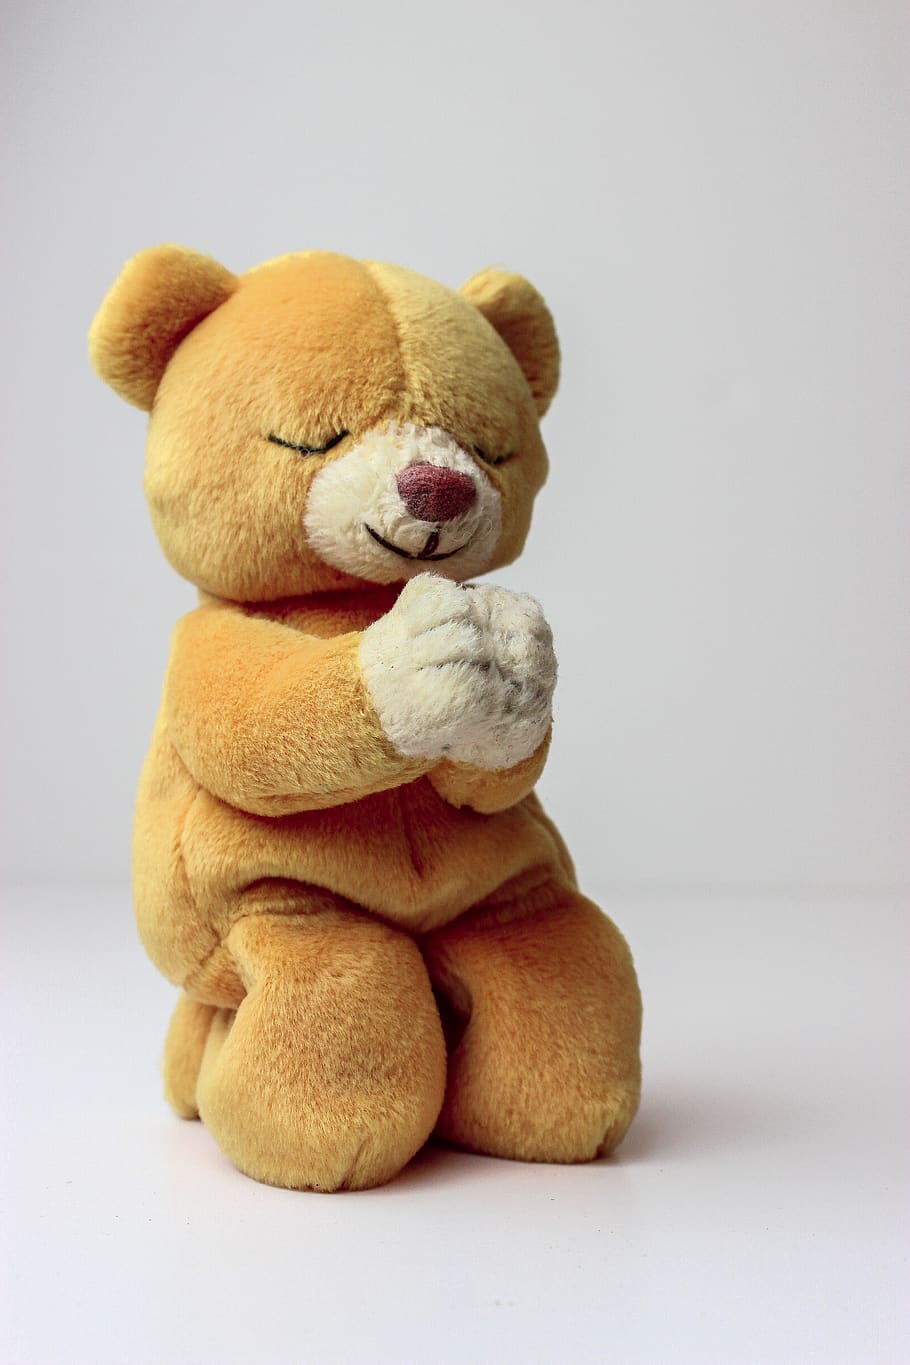 teddy bear, beanie baby, pray, praying, teddy, sweet, cute, bear, brown, soft toy